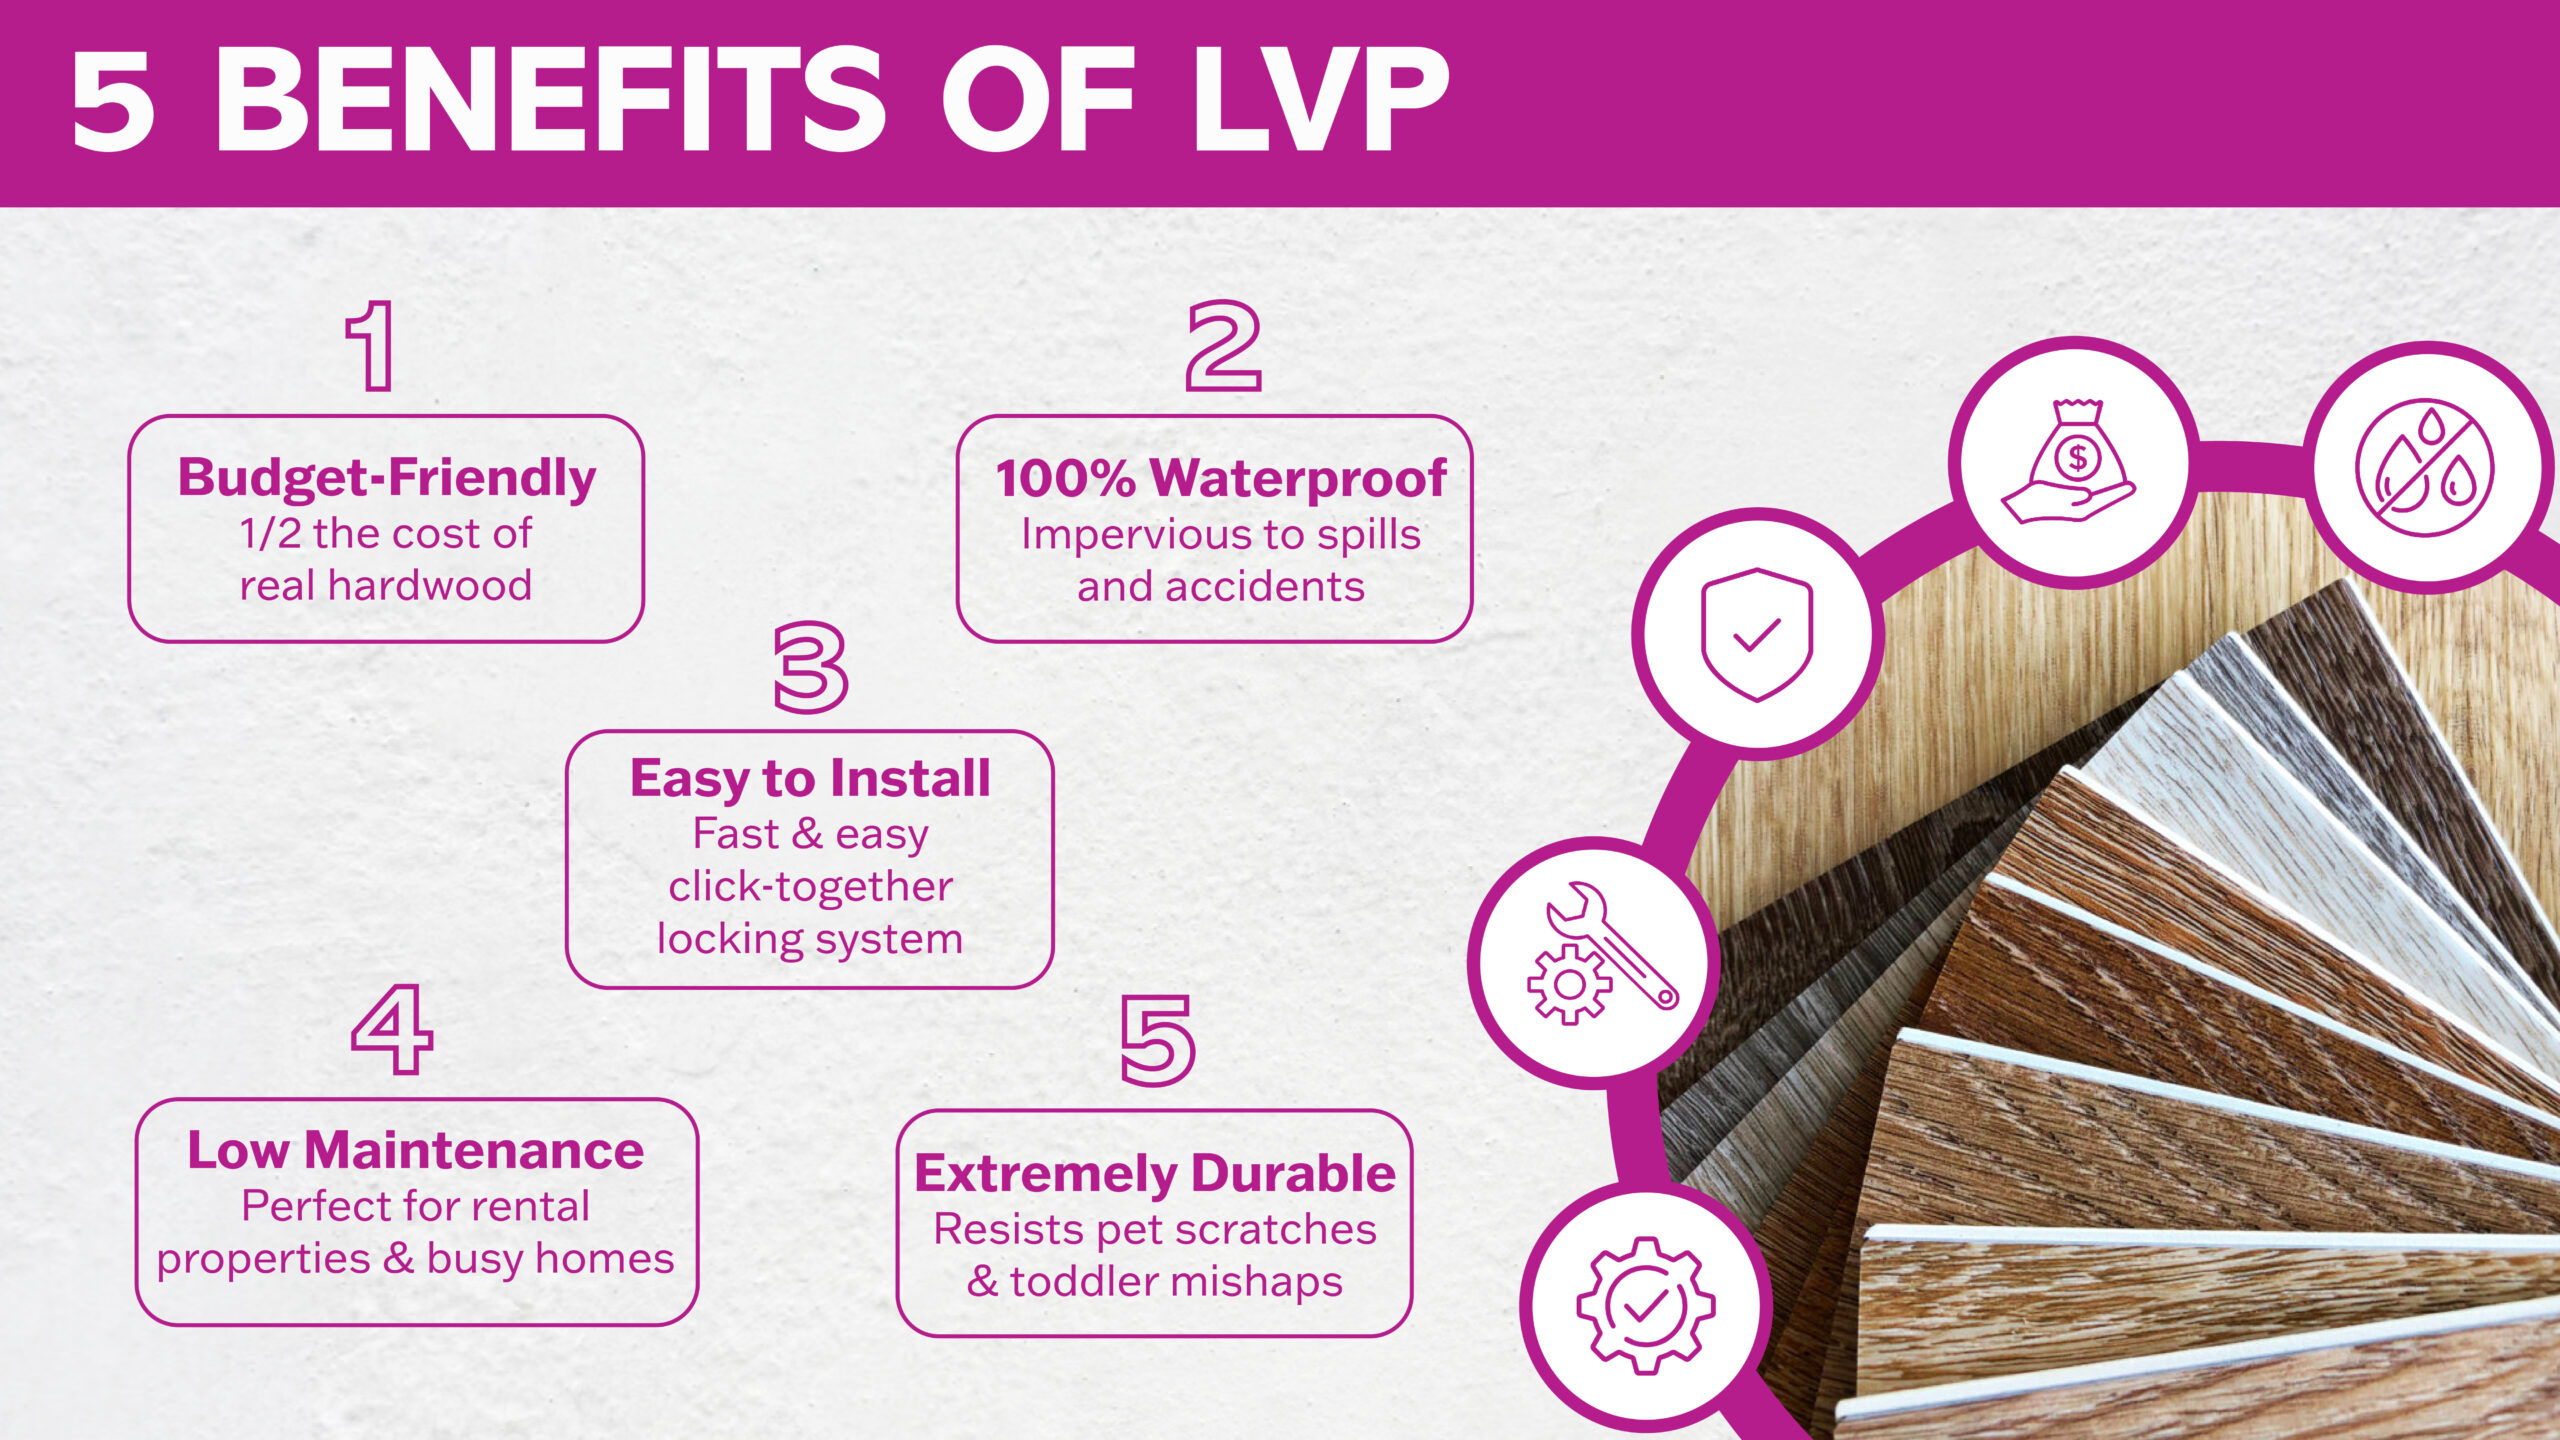 Floorily Benefits of Luxury Vinyl Plank LVP Flooring Infographic